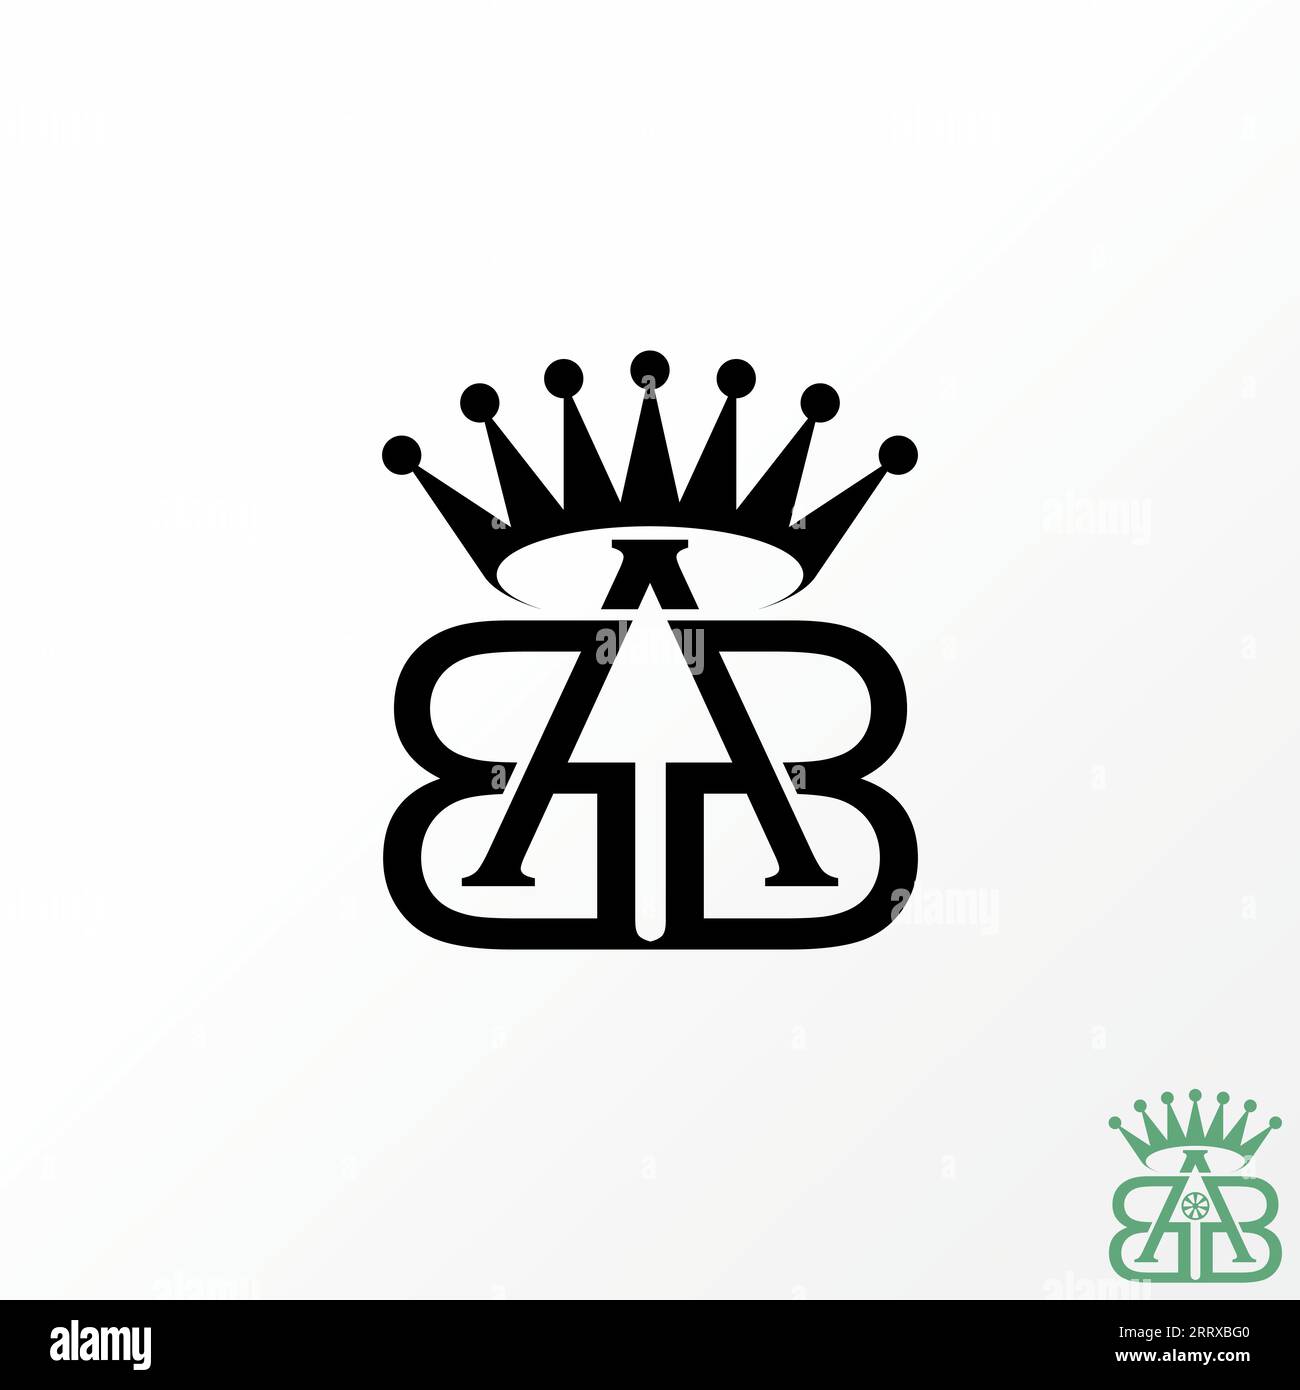 Logo-Design Grafikkonzept kreativer Premium-Vektor-Vorzeichenbuchstabe Initial BAB oder ABB Schriftart auf der oberen unteren Krone verbunden. Verwandte Monogramm-Typographie Stock Vektor